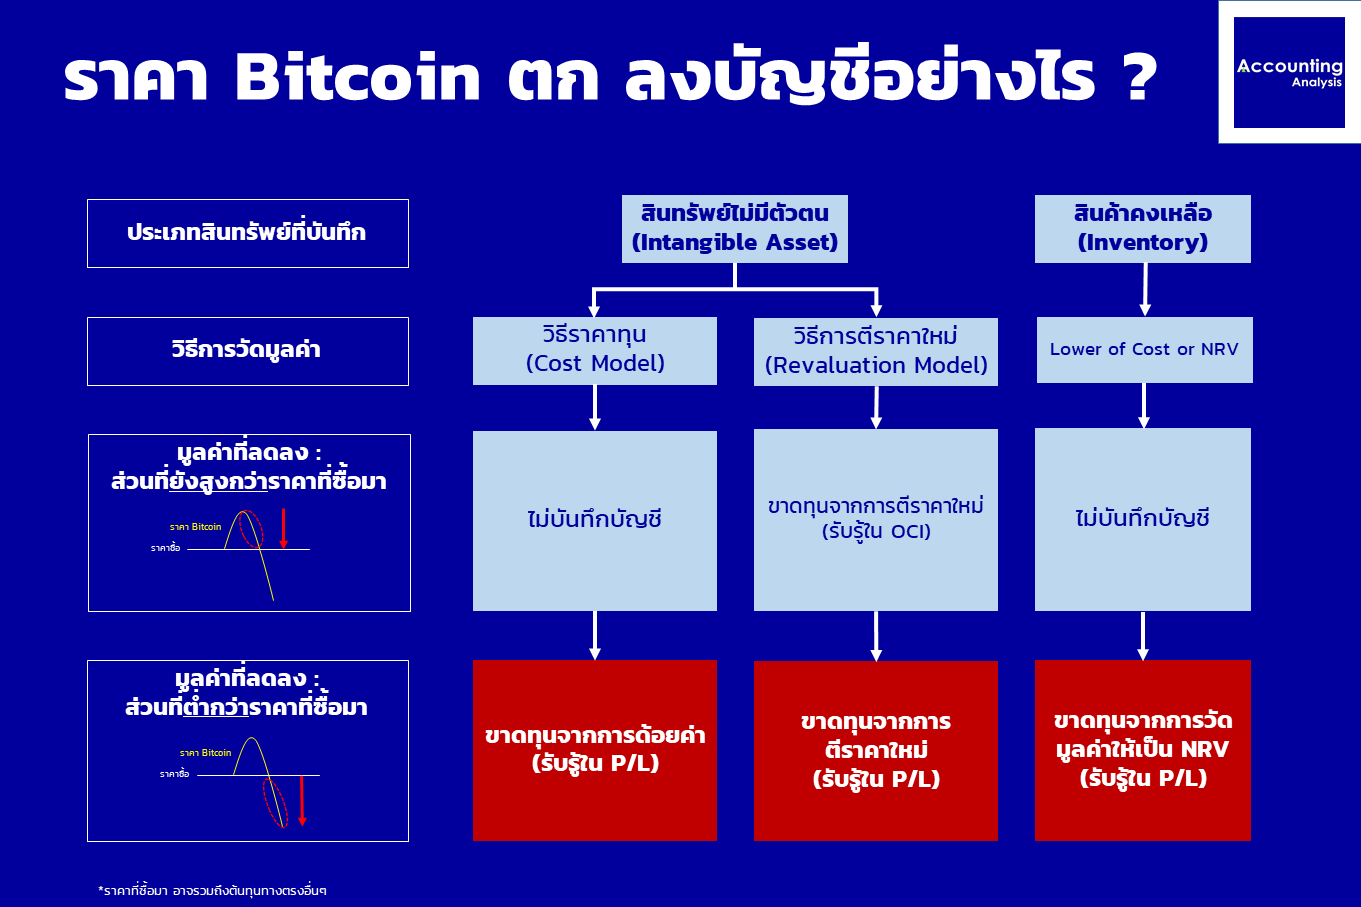 ราคา Bitcoin ตก ลงบัญชีอย่างไร ? | Accounting Analysis